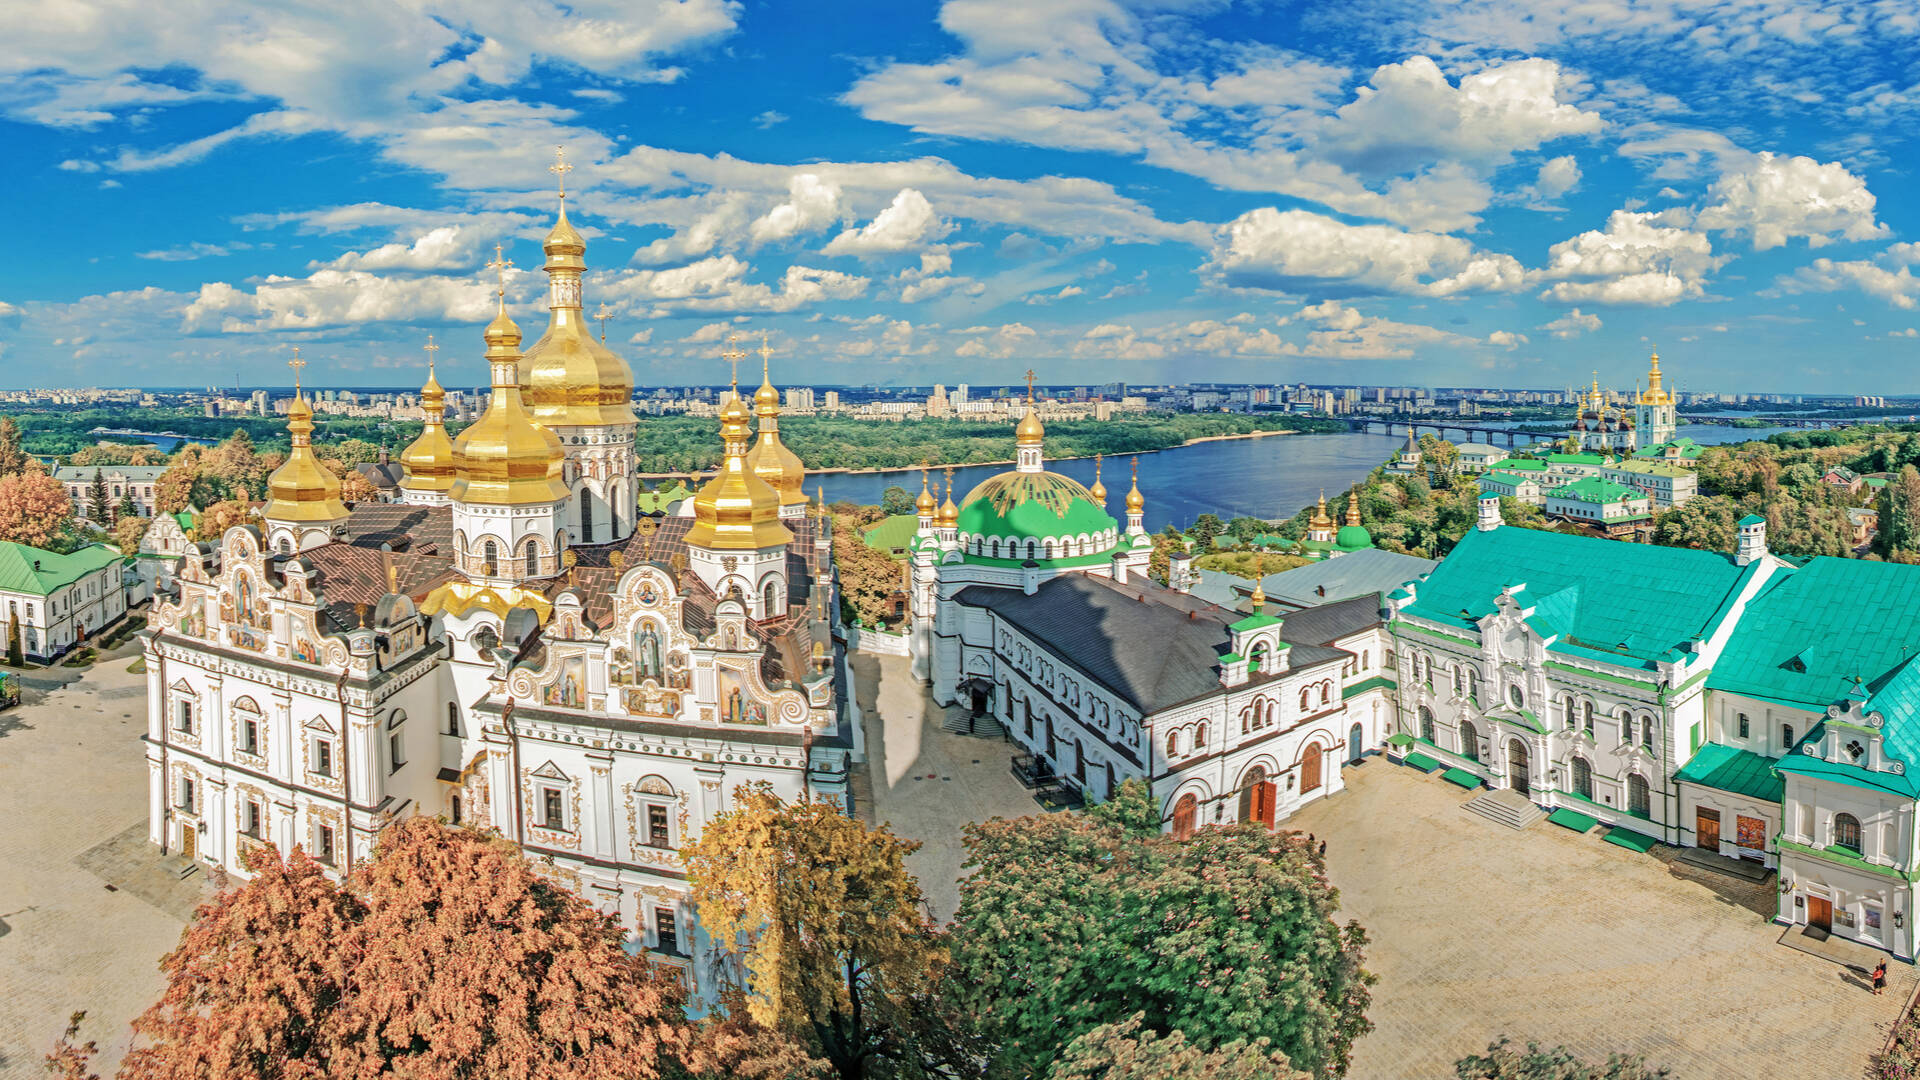 Kiew Reisen und Billigflug - Ukraine - Hotels und Flug nach Kiew